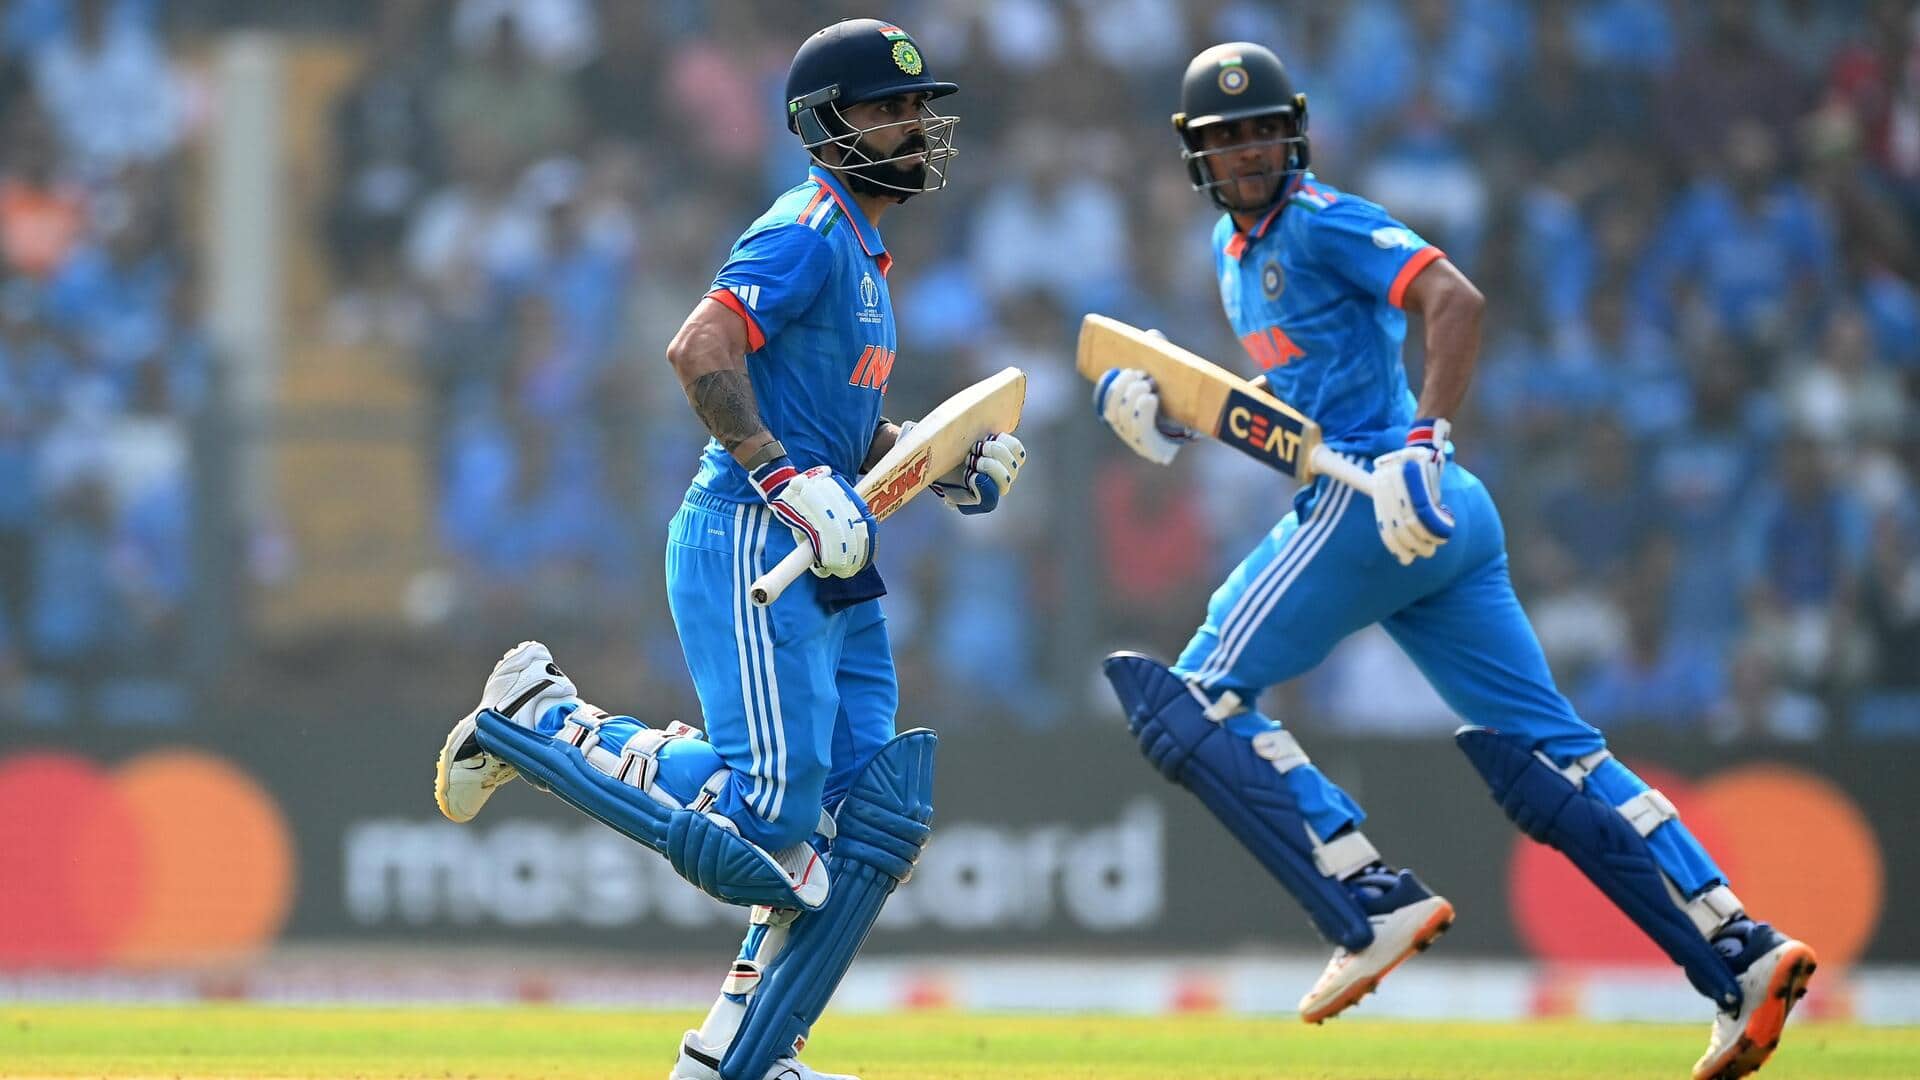 भारत ने विश्व कप में बनाया अपना चौथा सर्वोच्च स्कोर, श्रीलंका को दिया 358 का लक्ष्य